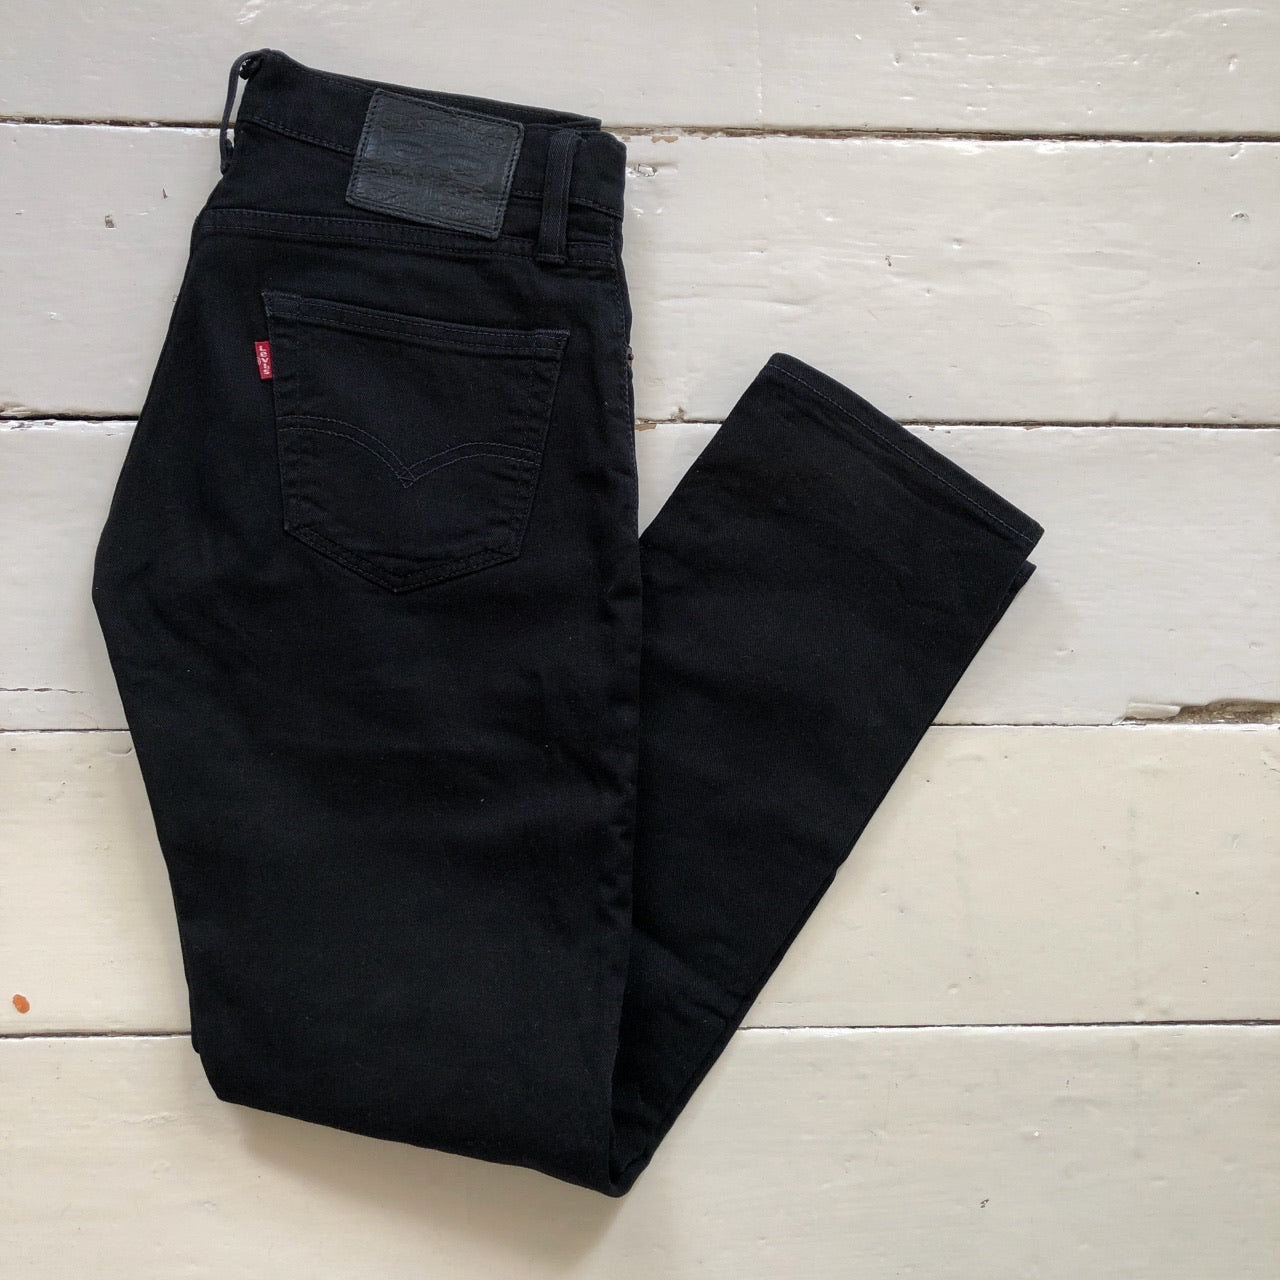 Levis Black 511 Slim Fit Jeans (30/30)